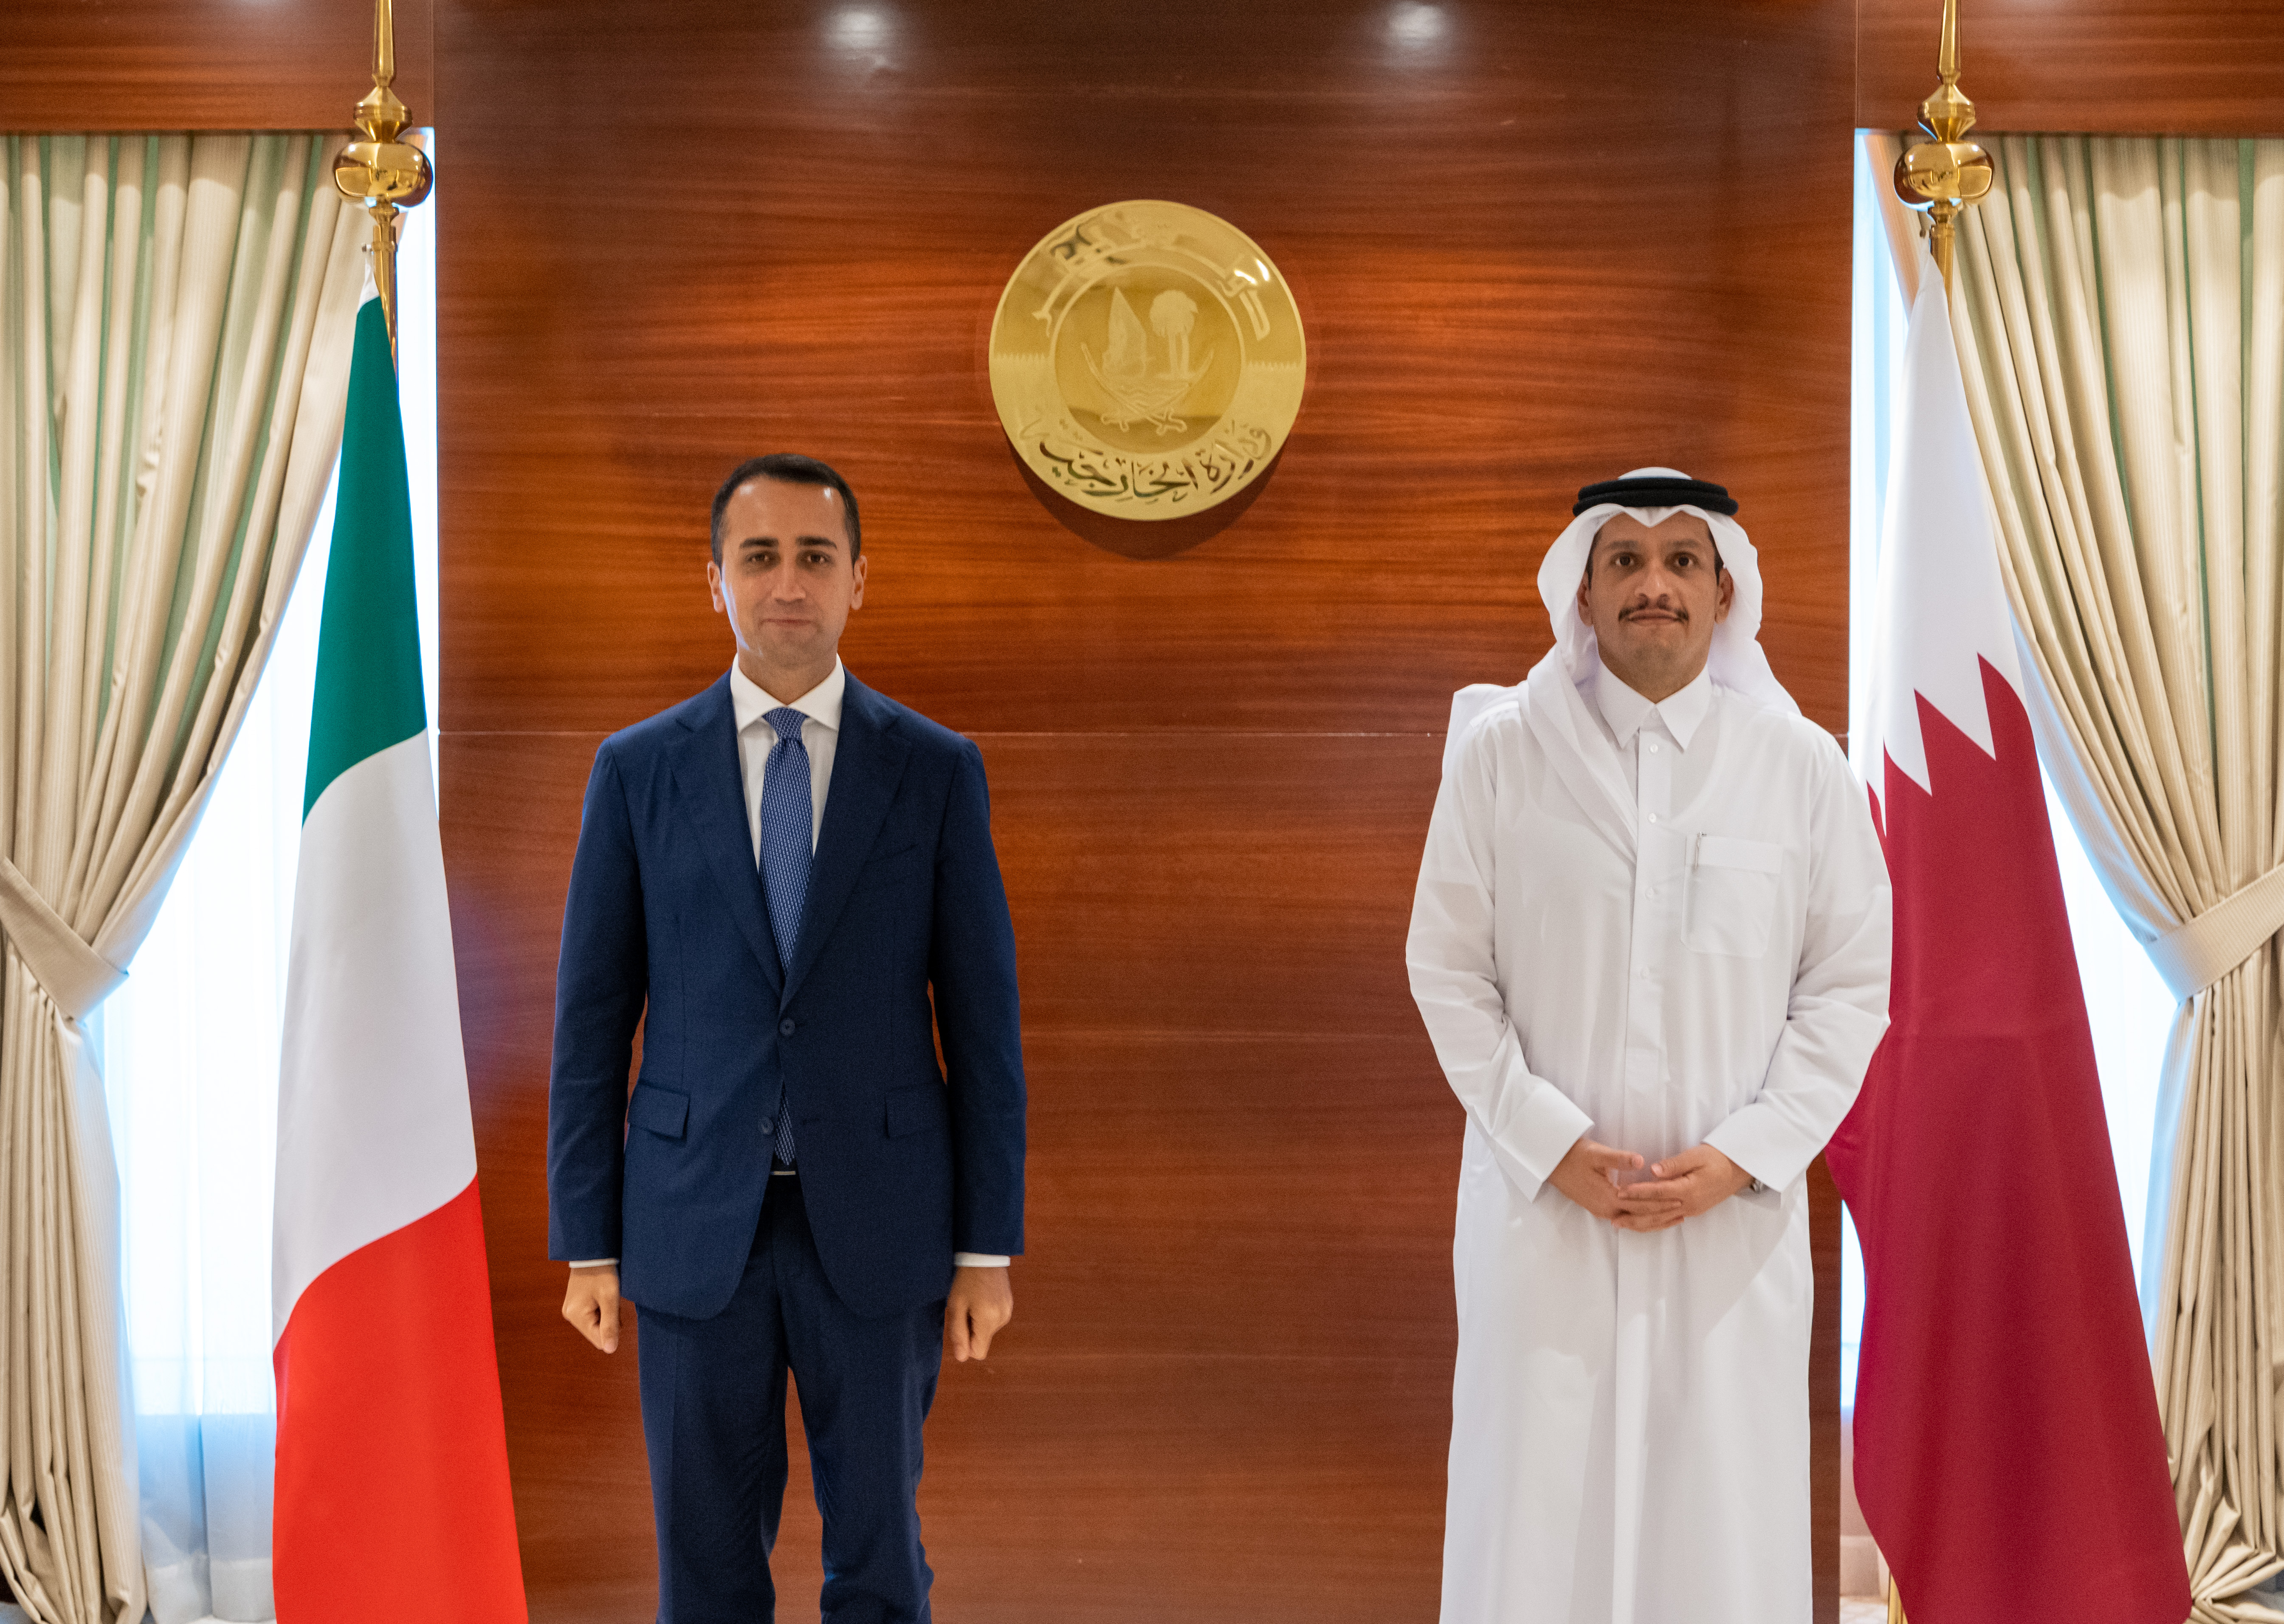 نائب رئيس مجلس الوزراء وزير الخارجية يجتمع مع وزير الشؤون الخارجية والتعاون الدولي الإيطالي